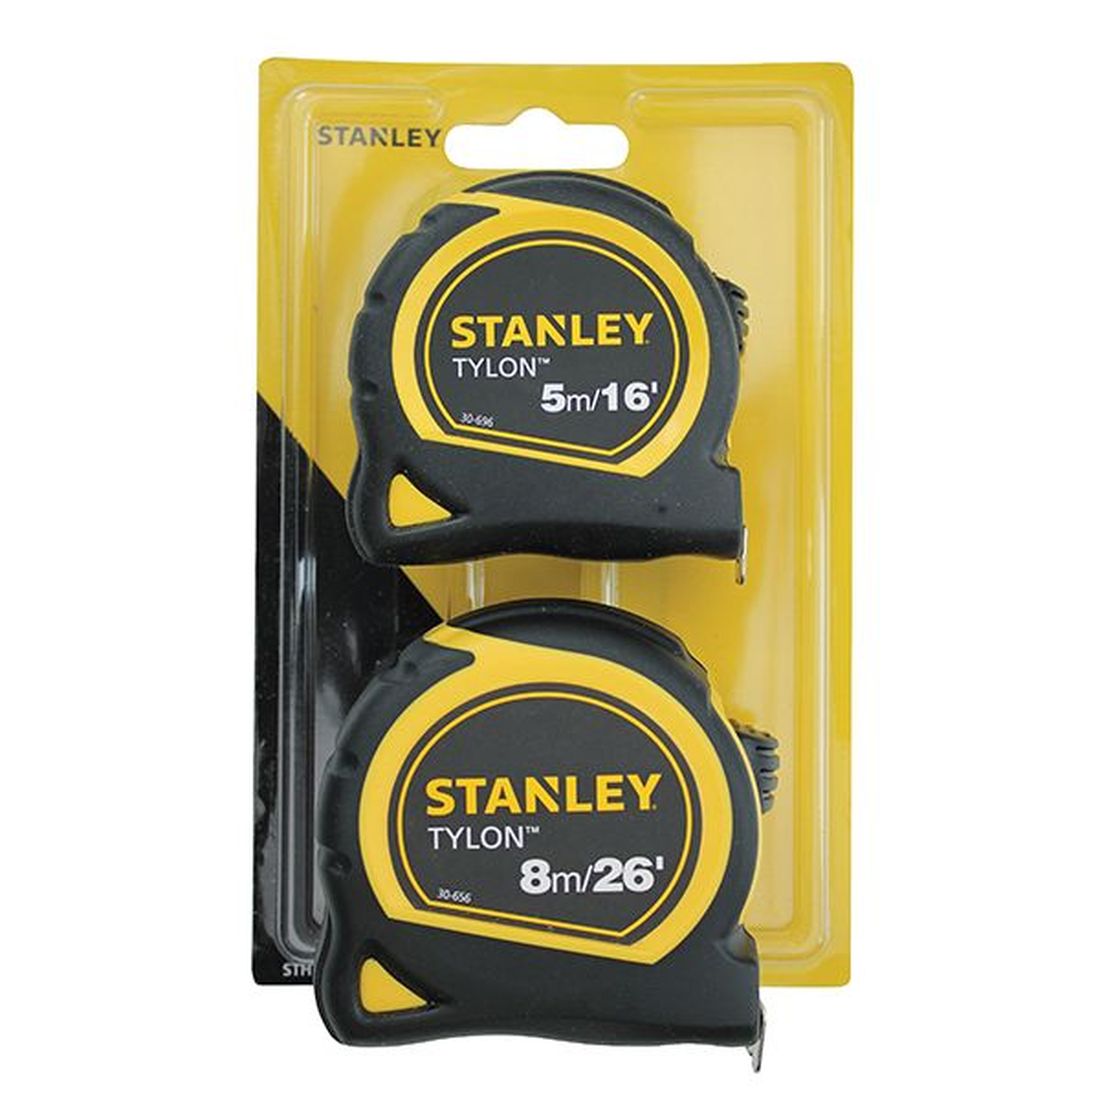 STANLEY Tylon Pocket Tapes 5m/16ft + 8m/26ft (Twin Pack)                               